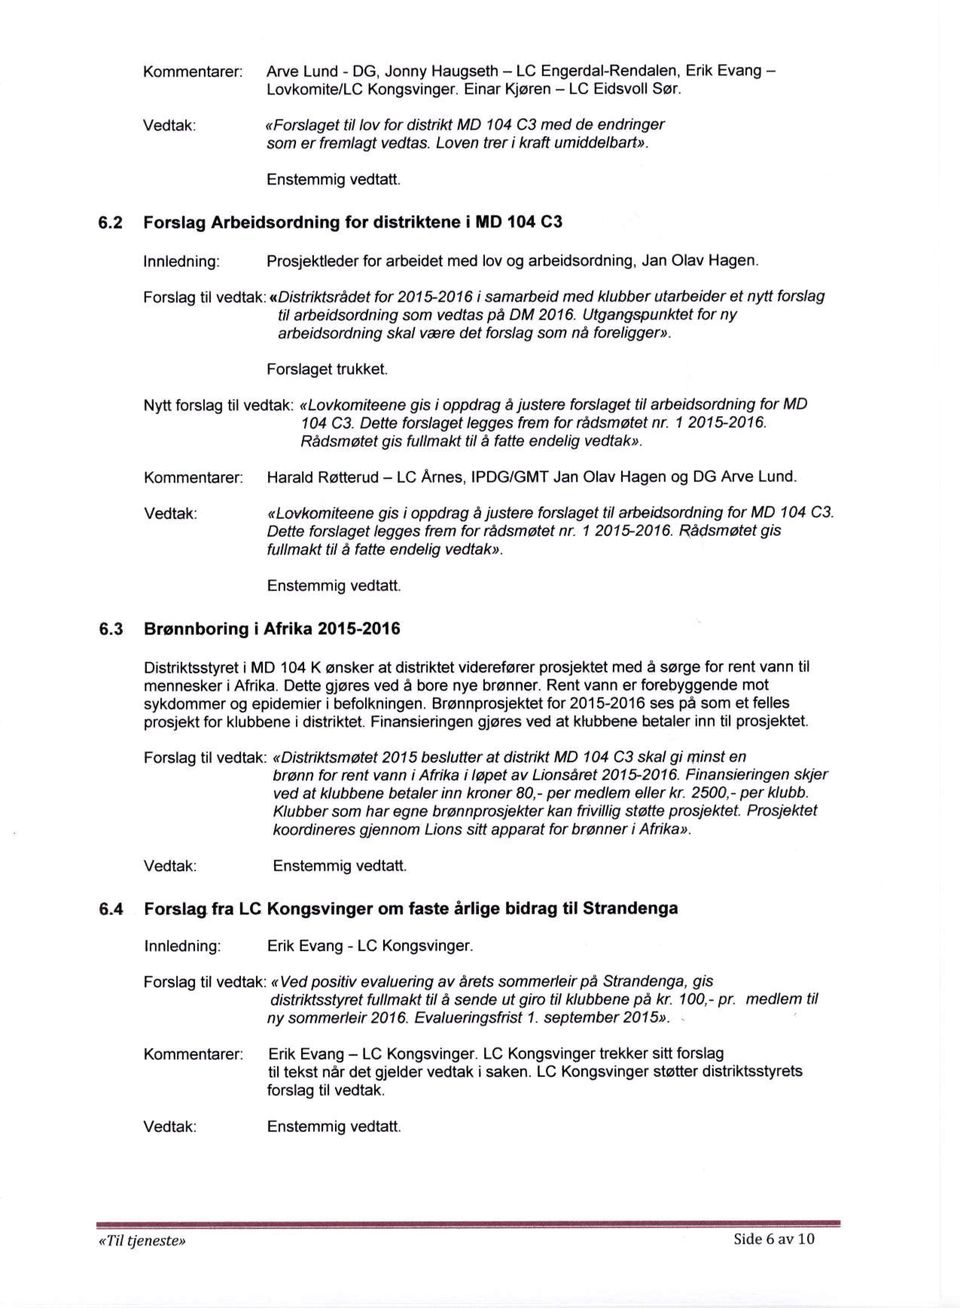 6,2 Forslag Arbeidsordning for distriktene i lld 104 C3 lnnledning: Prosjektleder for arbeidet med lov og arbeidsordning, Jan Olav Hagen.